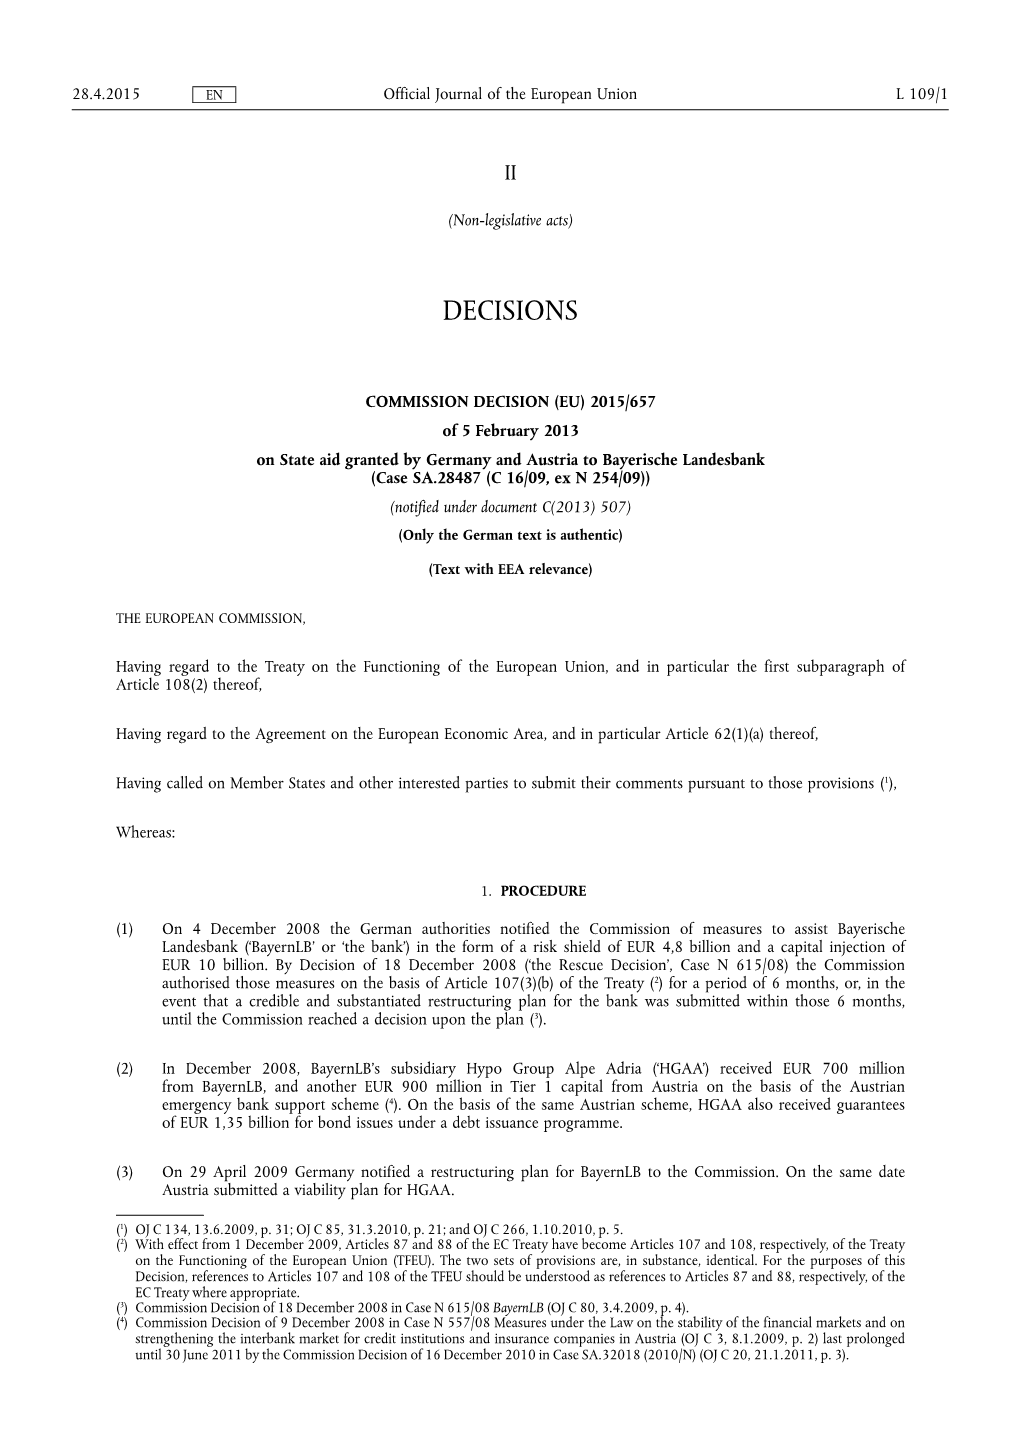 Commission Decision (Eu) 2015